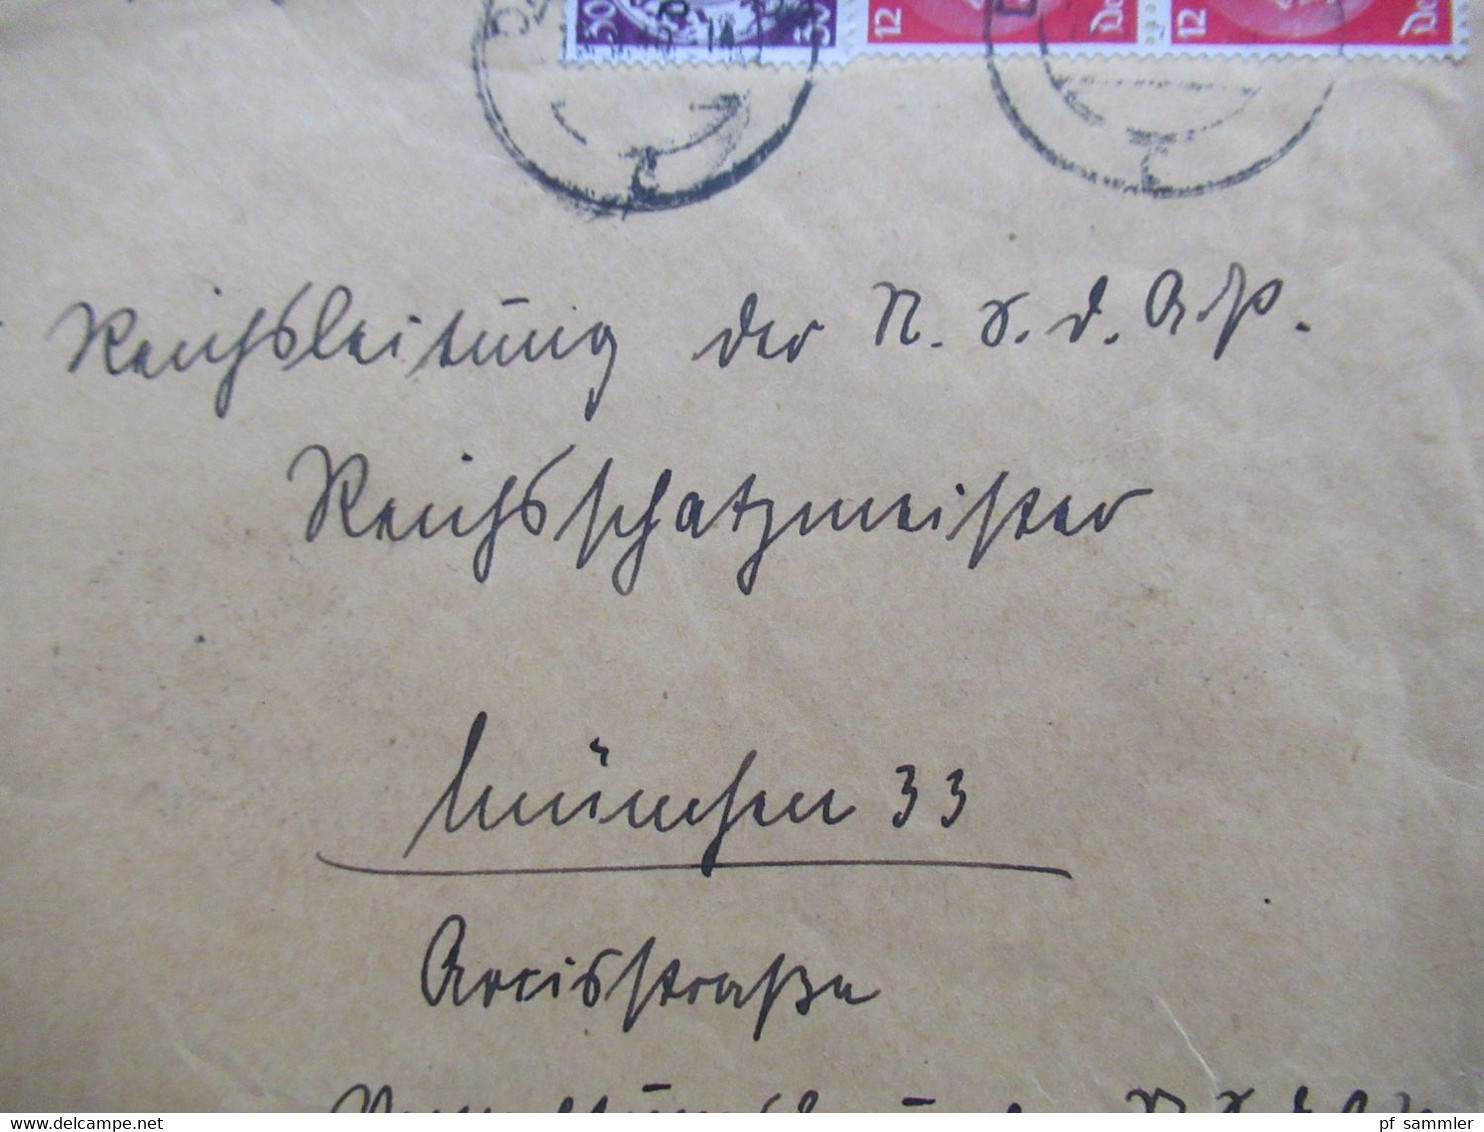 3.Reich 1940 Danzig Einschreiben Danzig Oliva 00768 An Die Reichsleitung Der NSDAP In München Mit 2 Ank. Stempel - Lettres & Documents